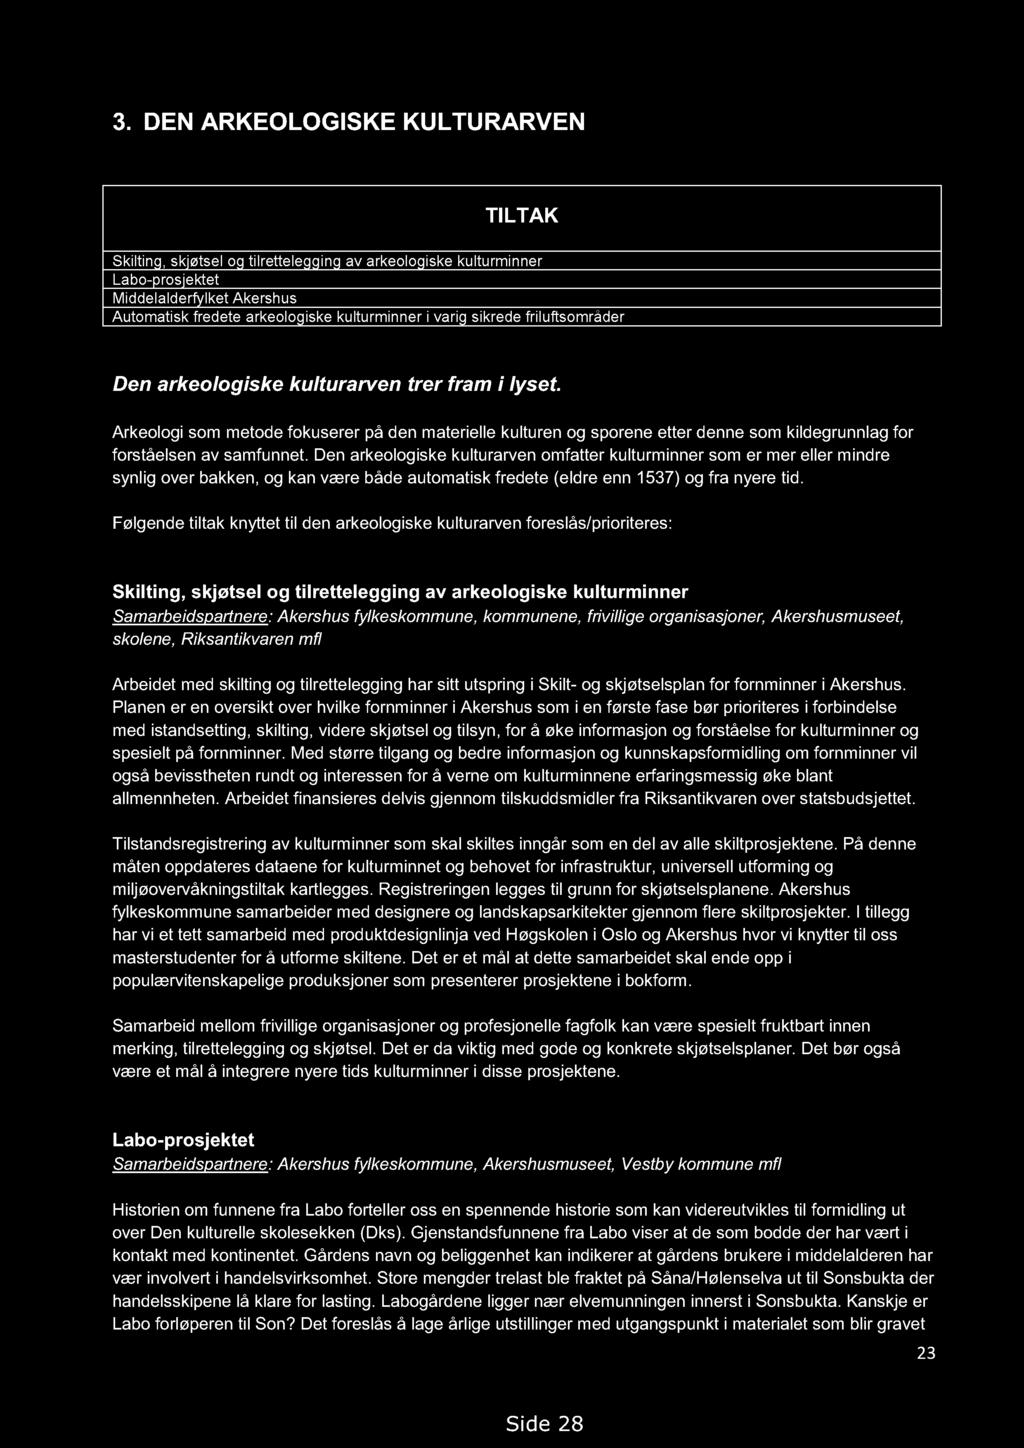 Handlingsprogram for kulturminner i Akershus 2013-2018. Høringsutkast 14.09.2012, med endringer 19.02.2013 3.